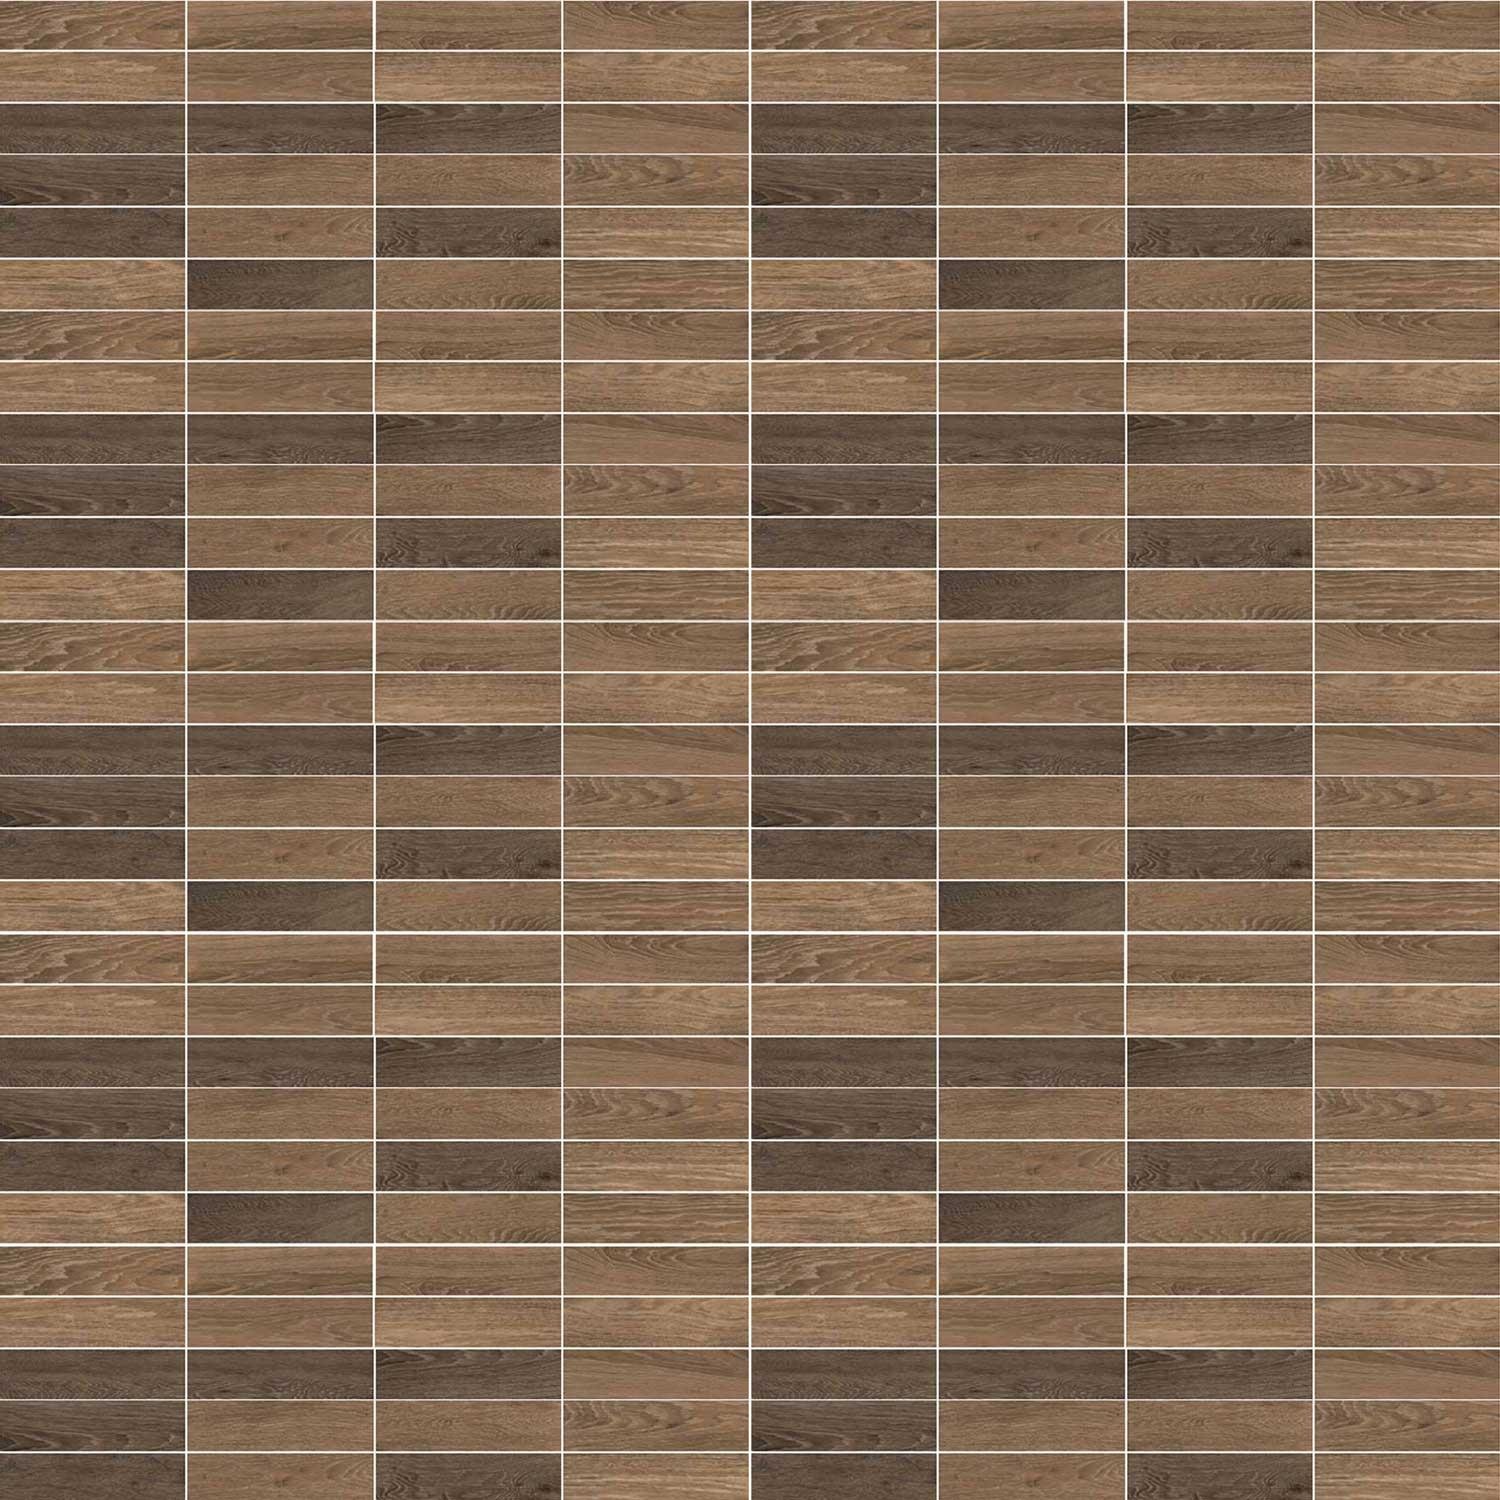 Parquet Brown Porcelain Plank Tile Wood Effect Walls floor 280 x 70mm